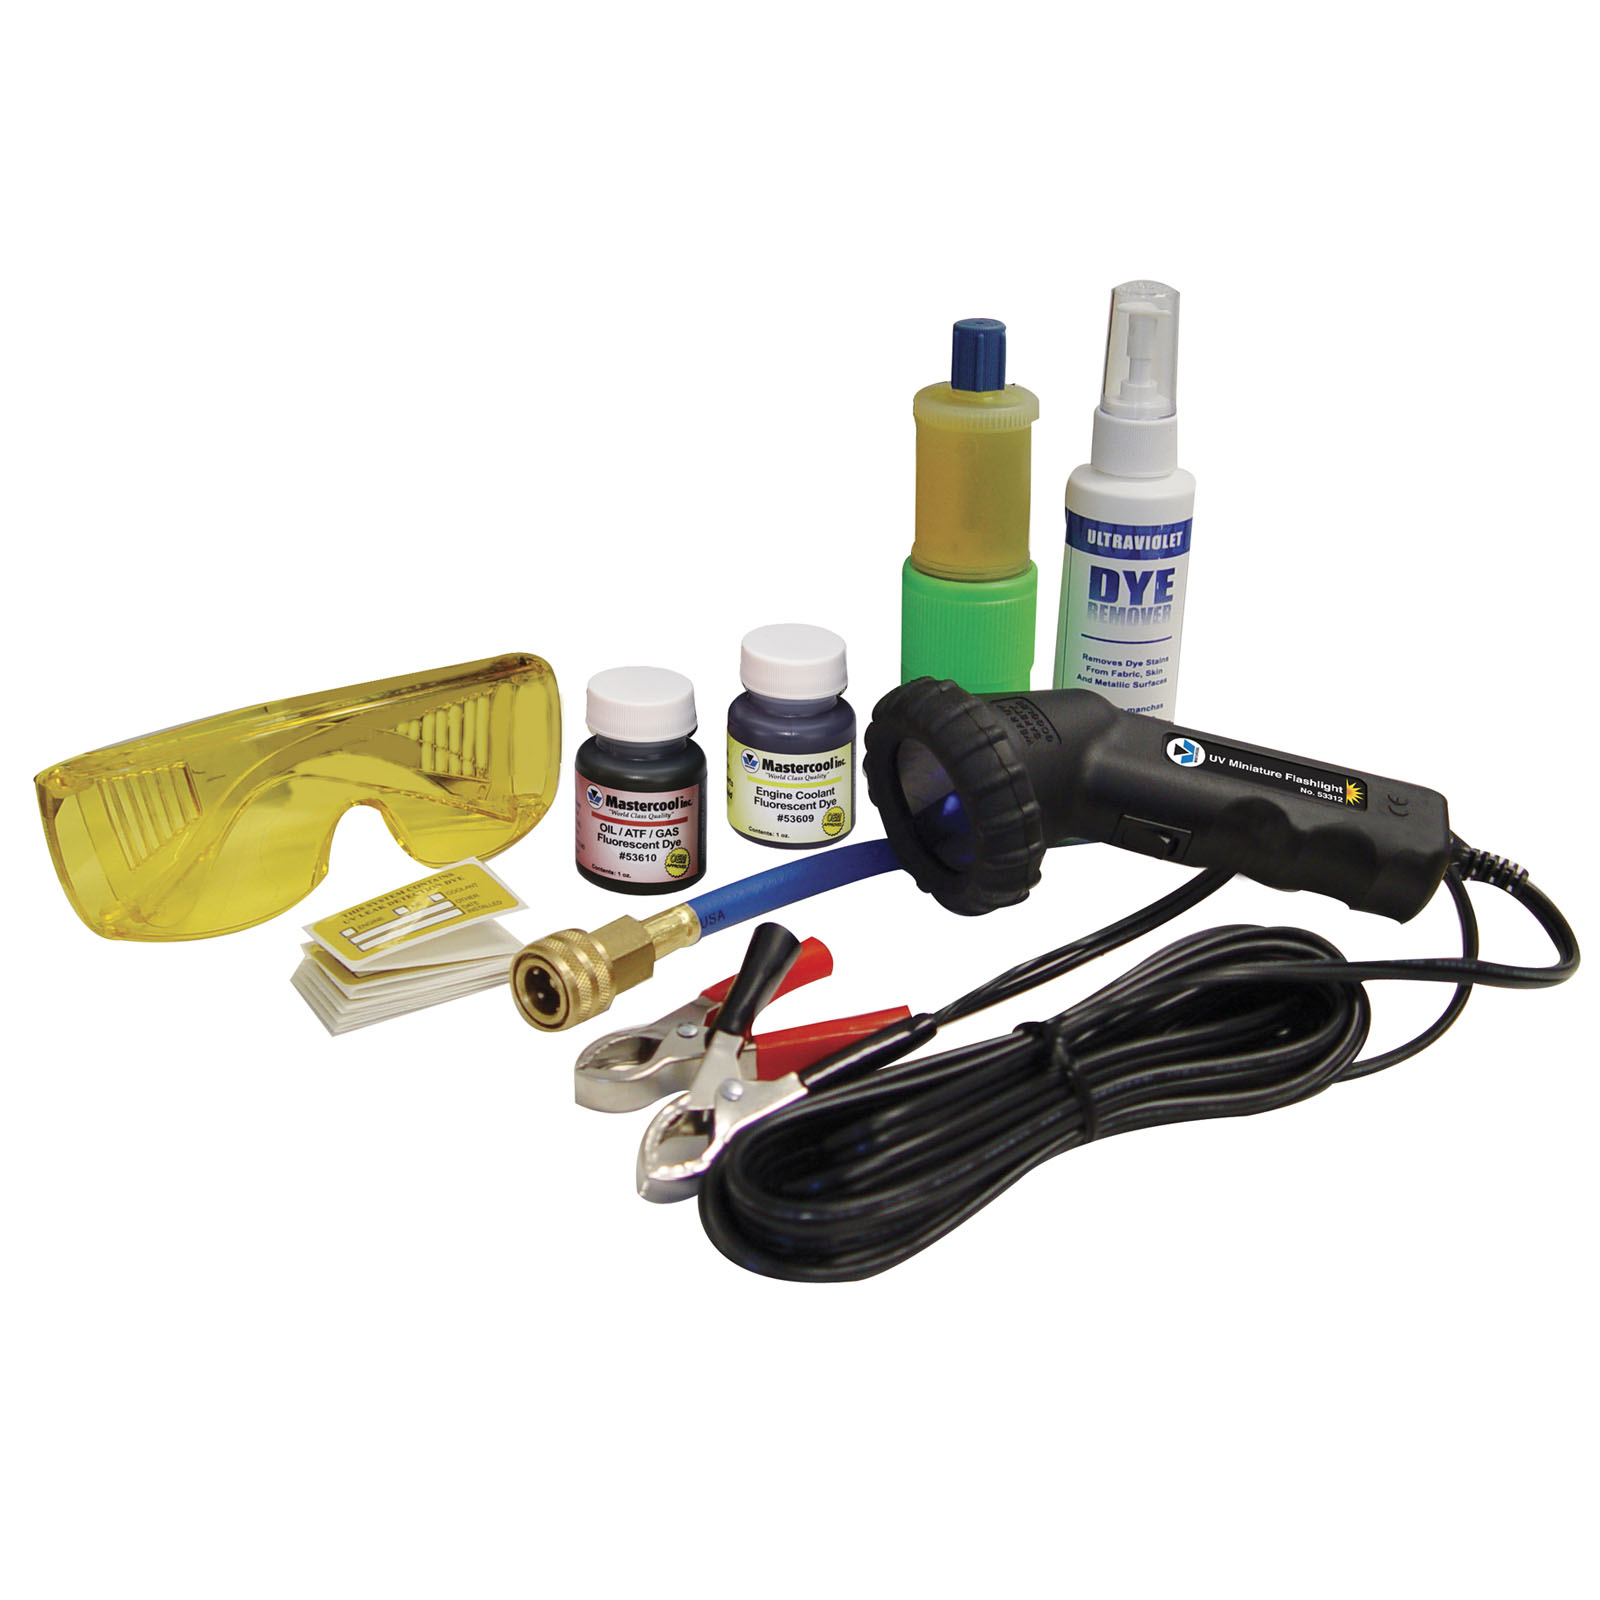 Professional leak detector kit Leak detector 